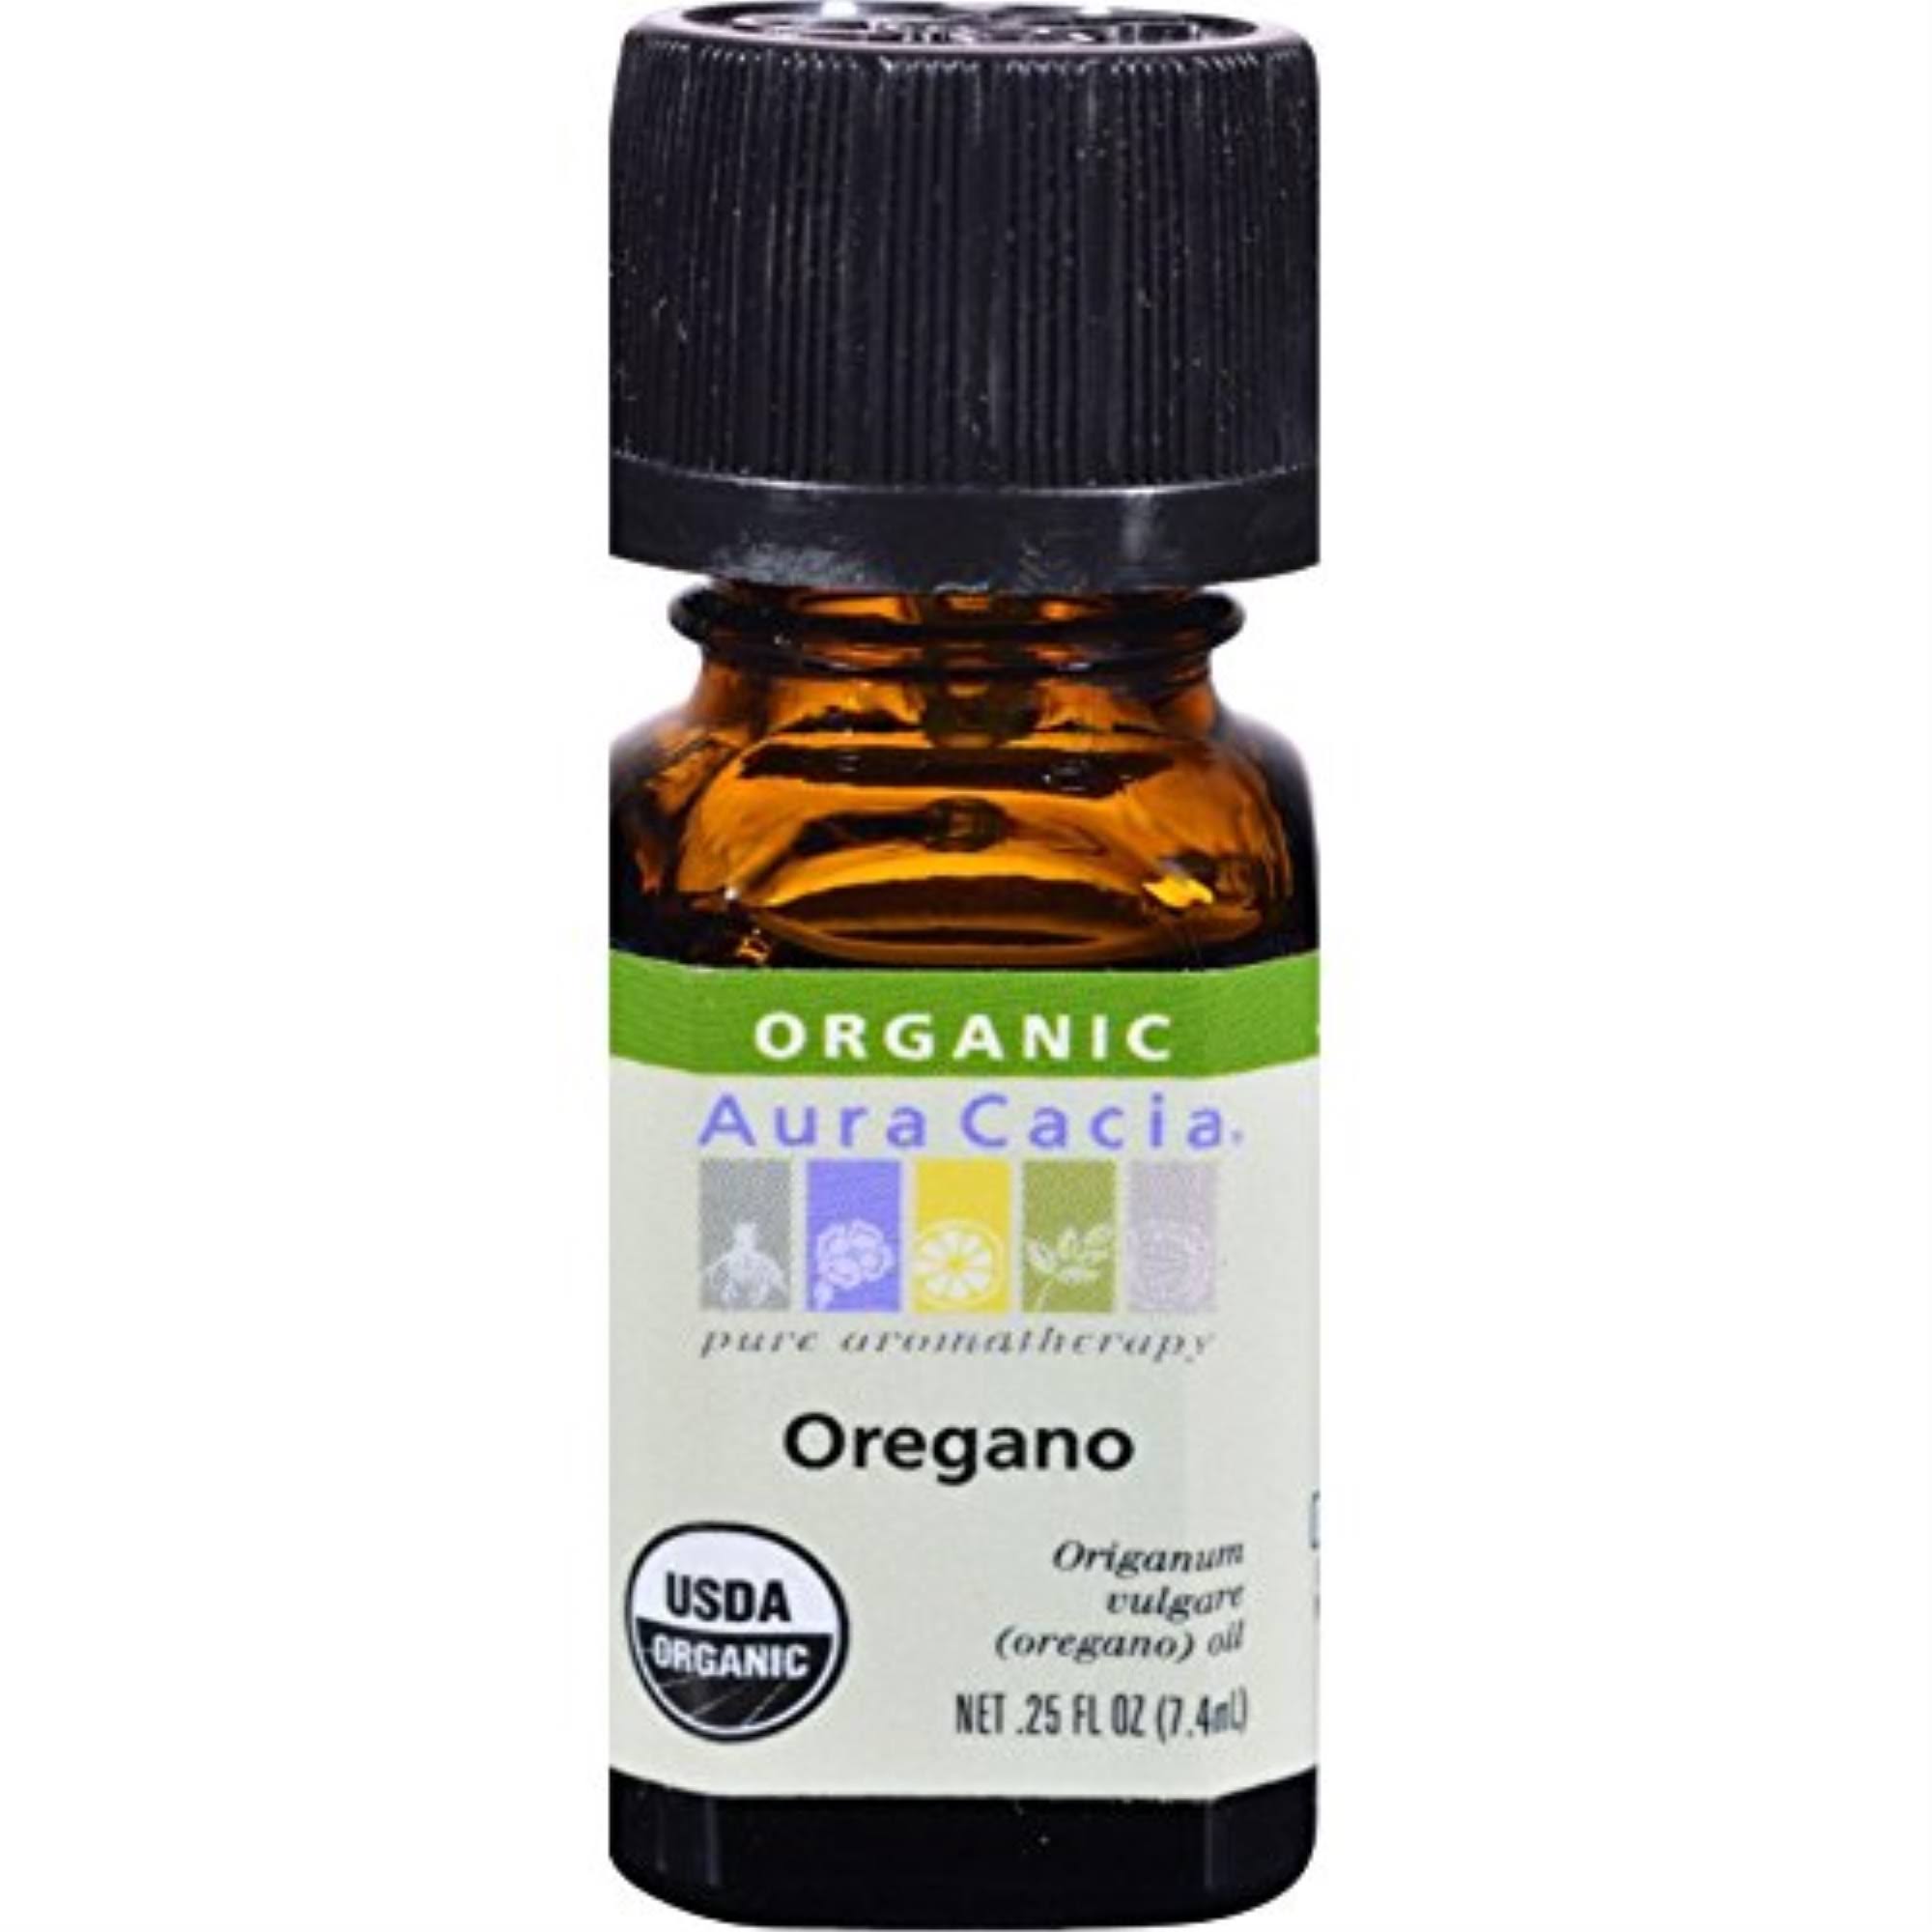 Aura Cacia Organic Essential Oil - Oregano, .25oz